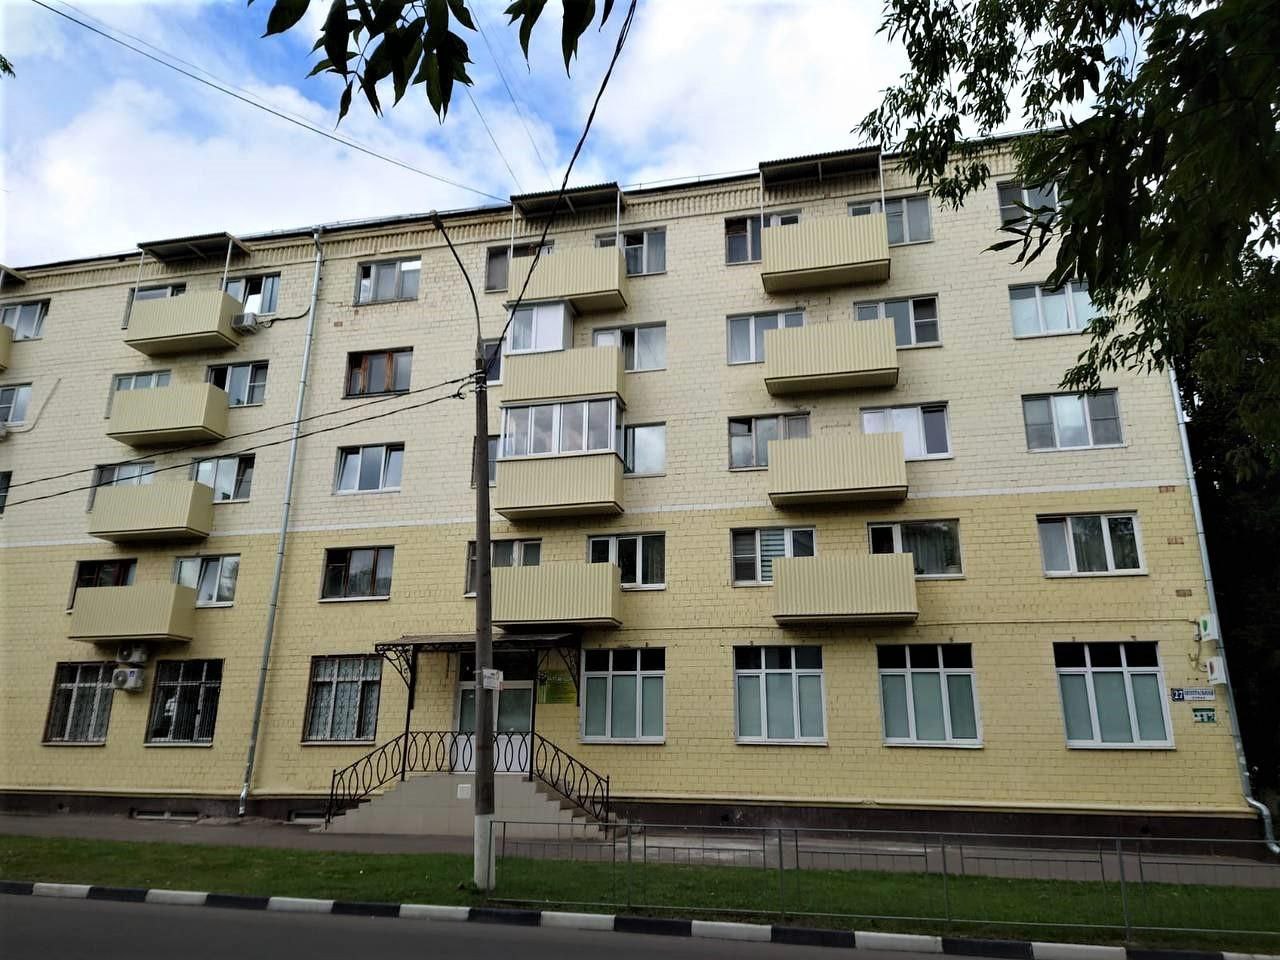 Завершилась замена балконных плит в многоквартирном жилом доме во Фрязино